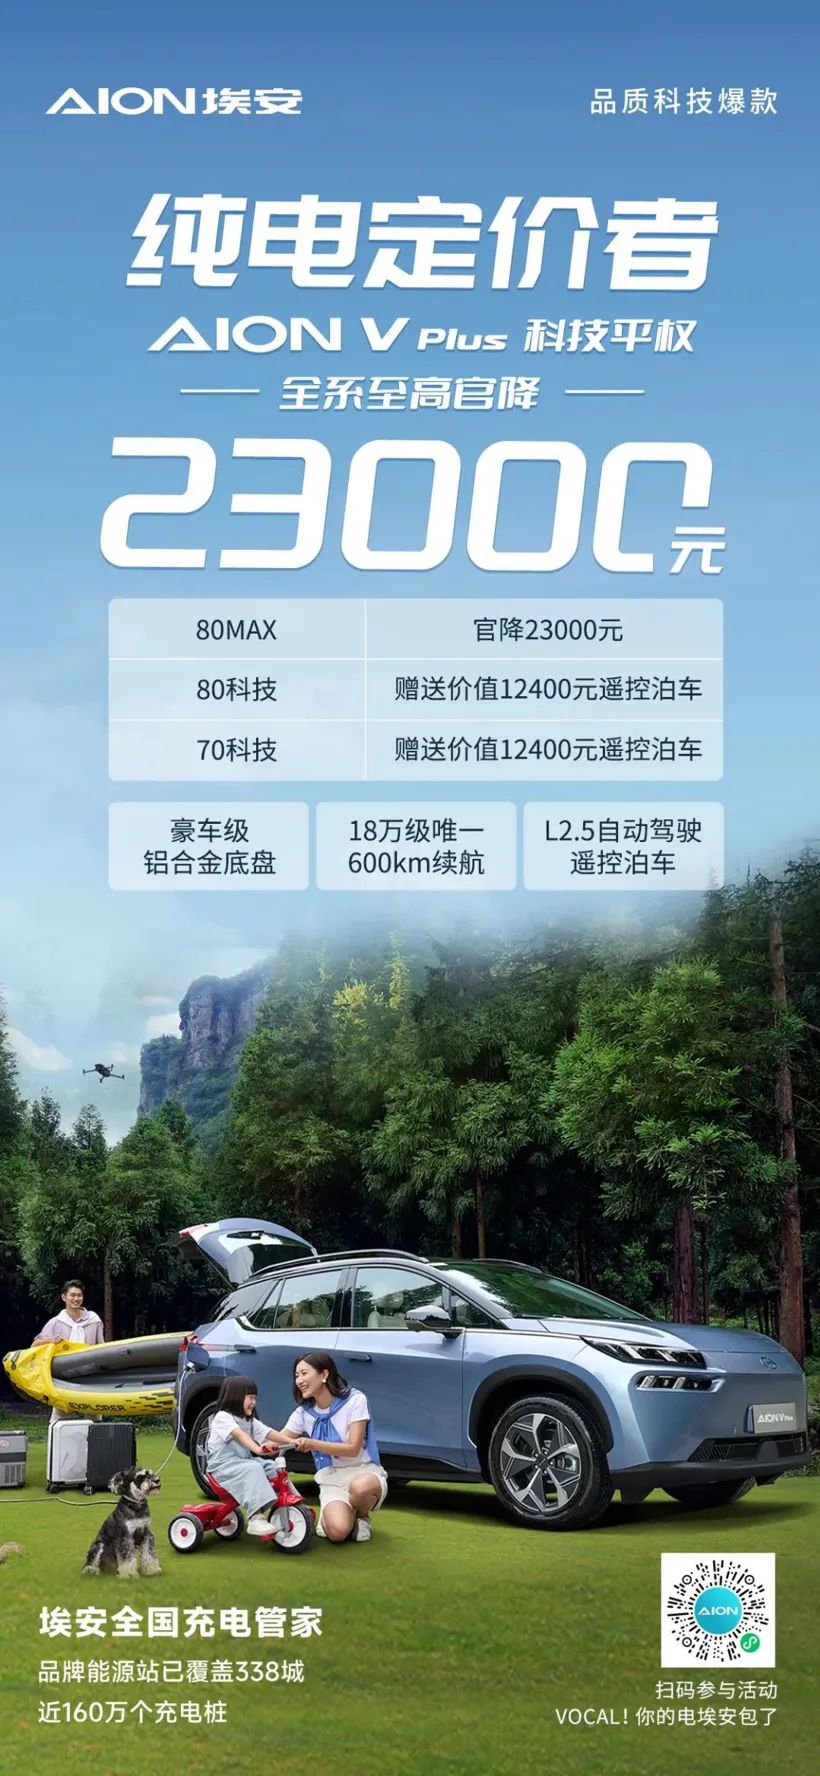 تمام GAC Aion V Plus سیریز کی قیمت سب سے زیادہ سرکاری قیمت کے لیے RMB 23,000 ہے۔